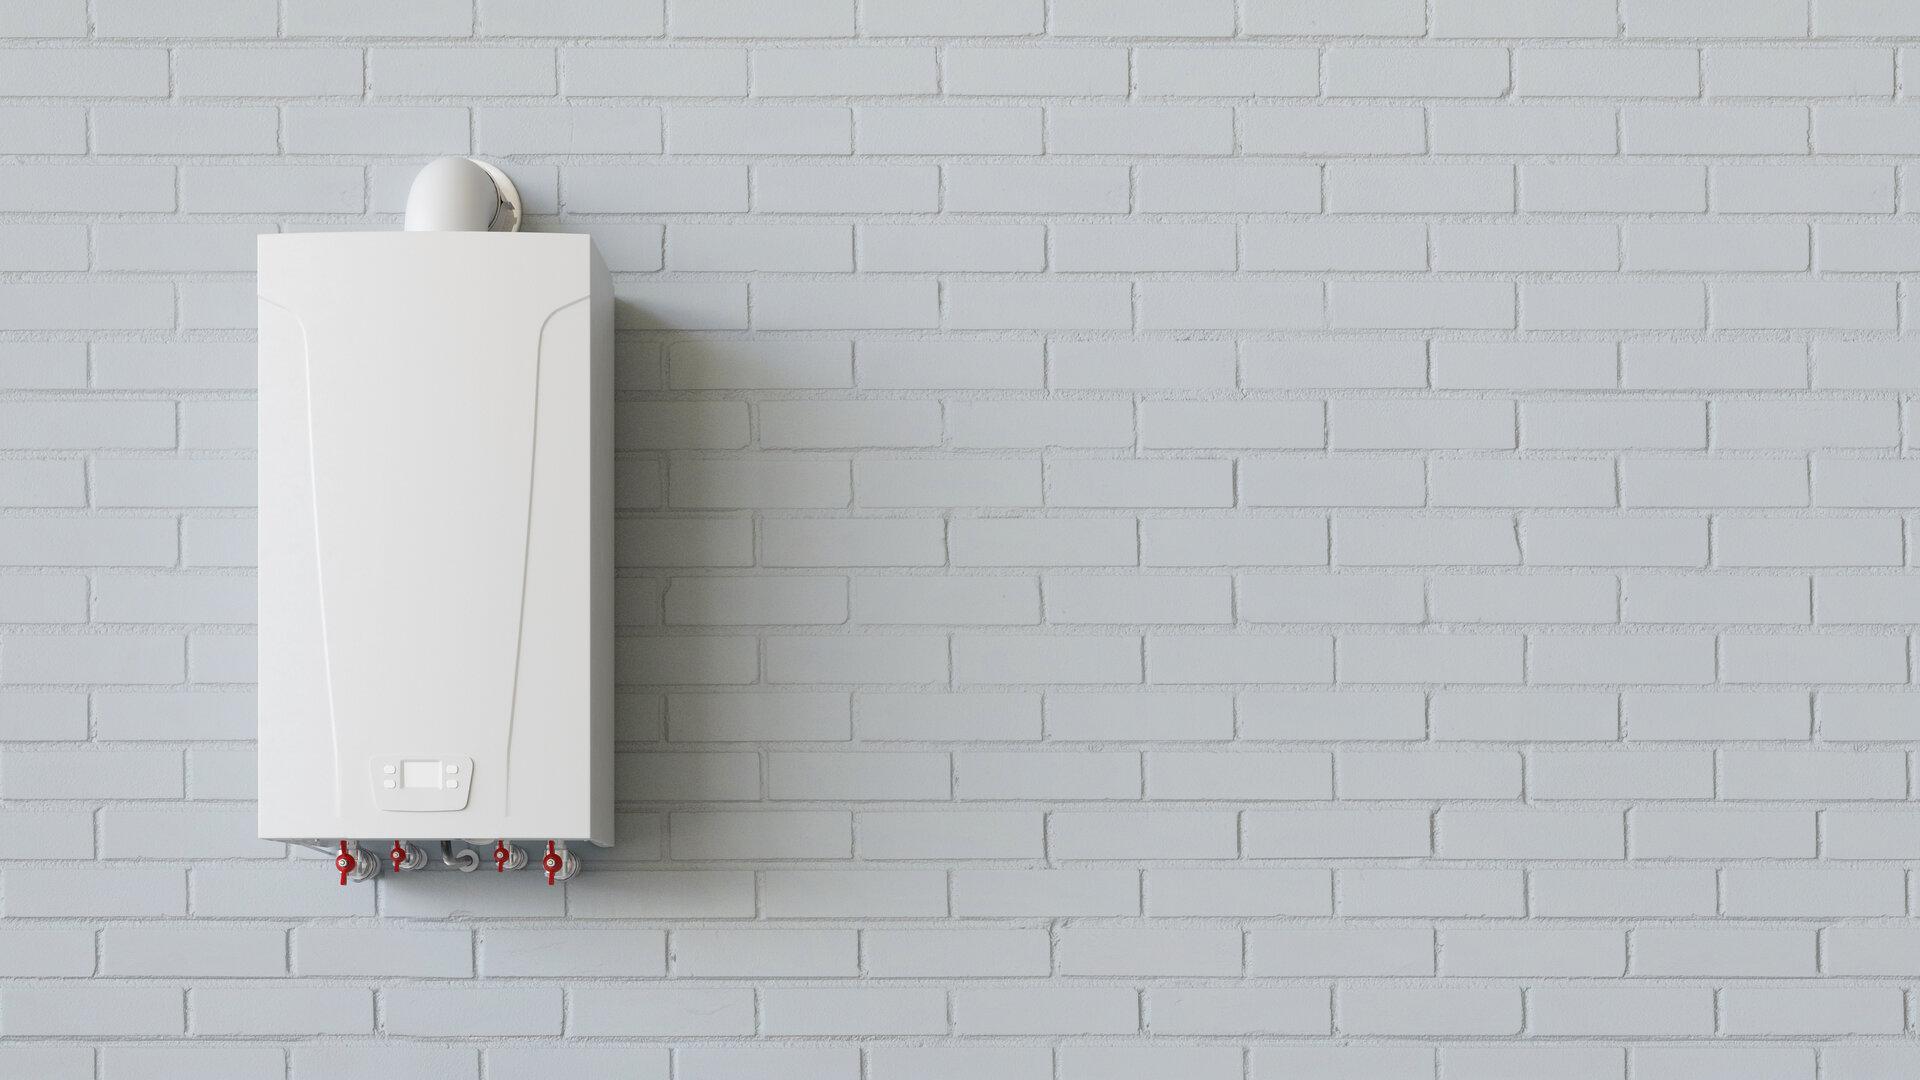 Gas Boiler für Warmwasser an Wand von Keller